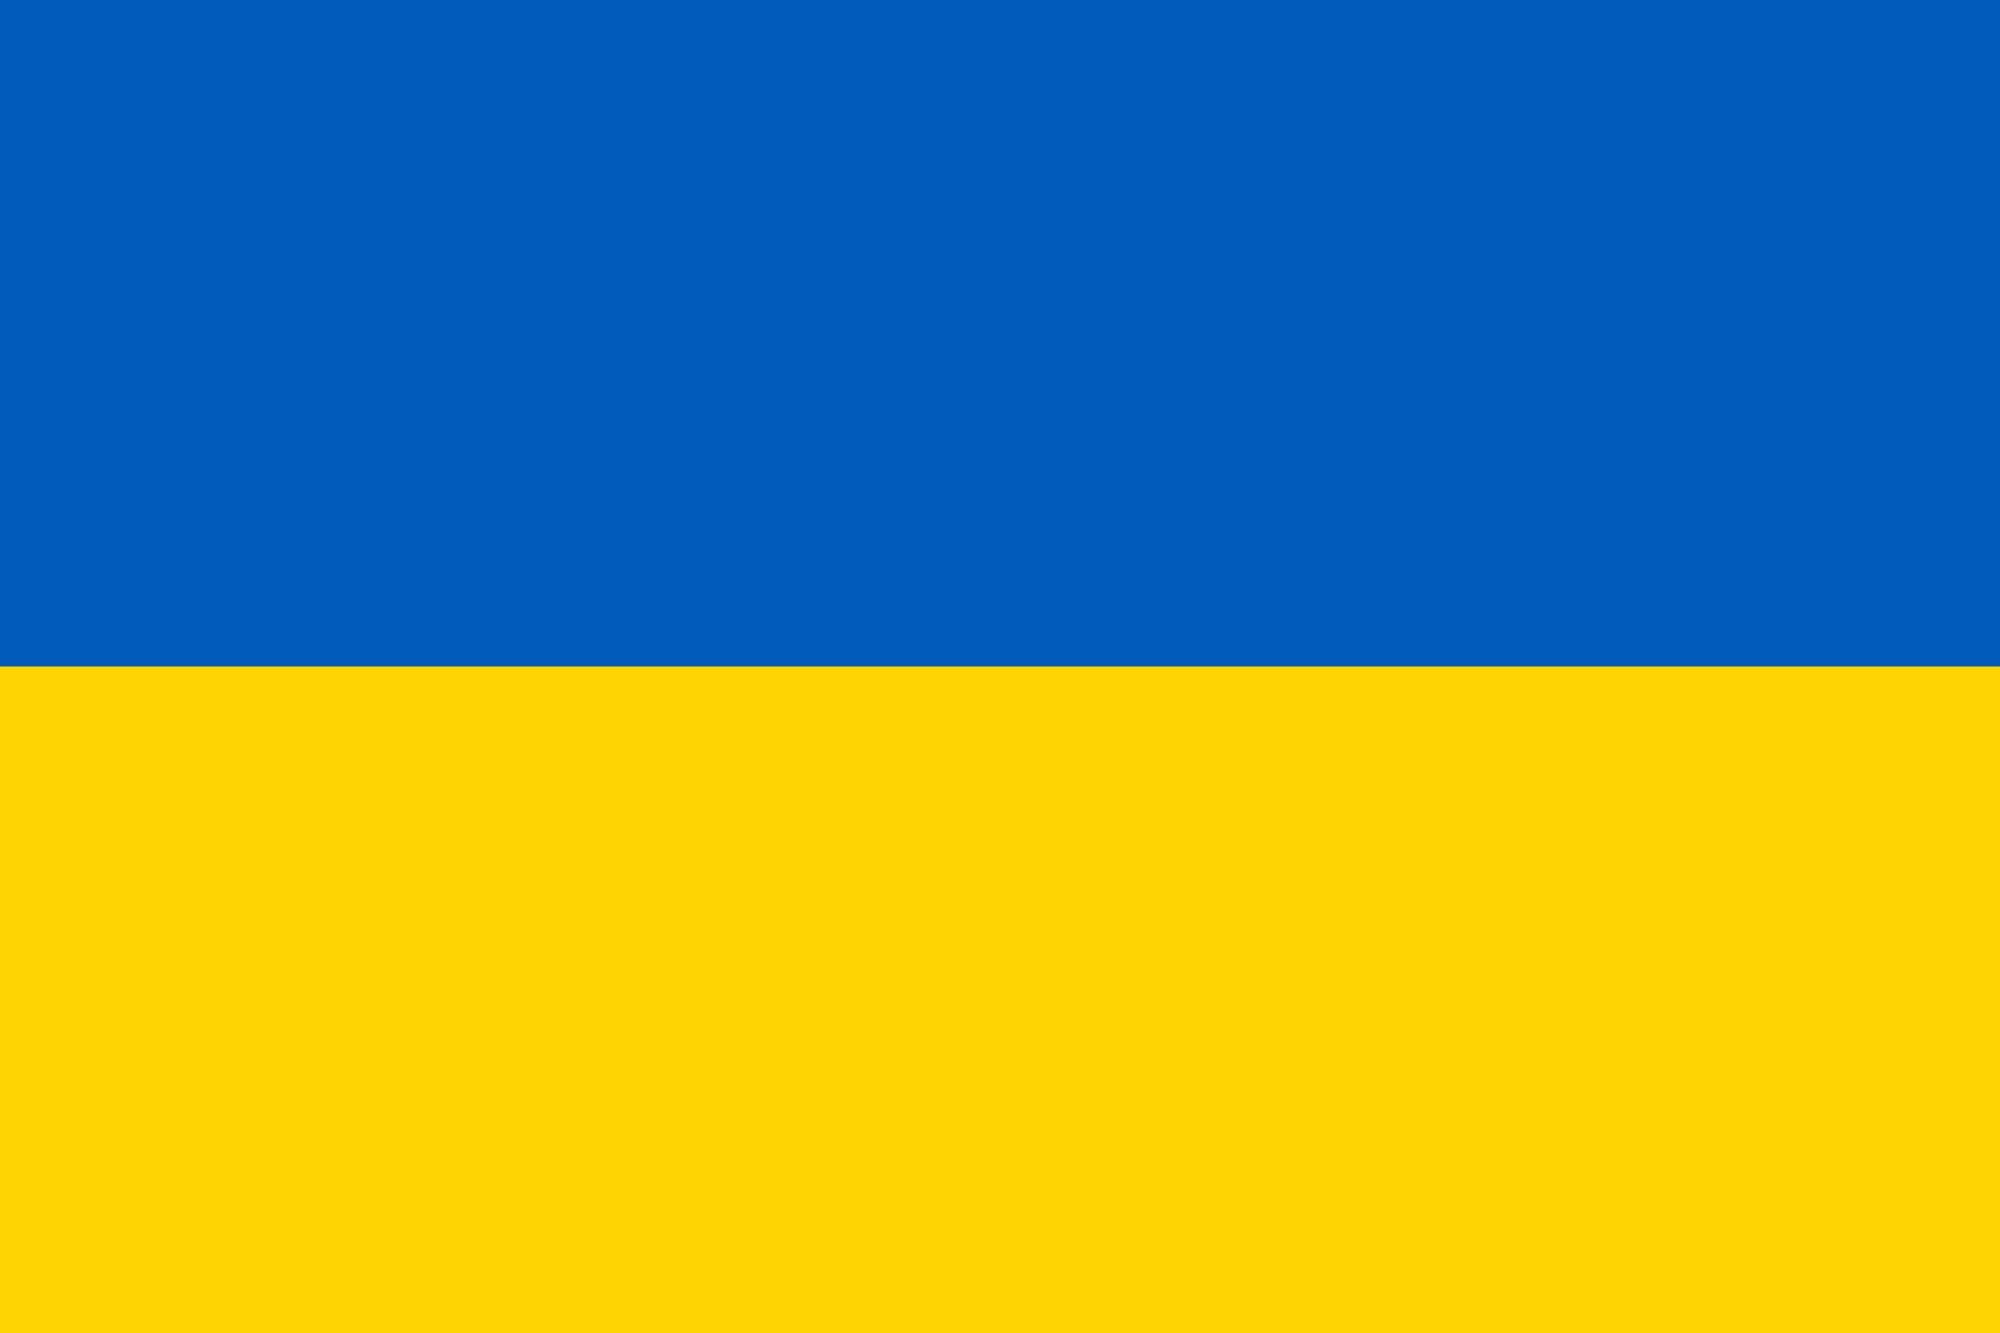 https://de.wikipedia.org/wiki/Flagge_der_Ukraine#/media/Datei:Flag_of_Ukraine.svg